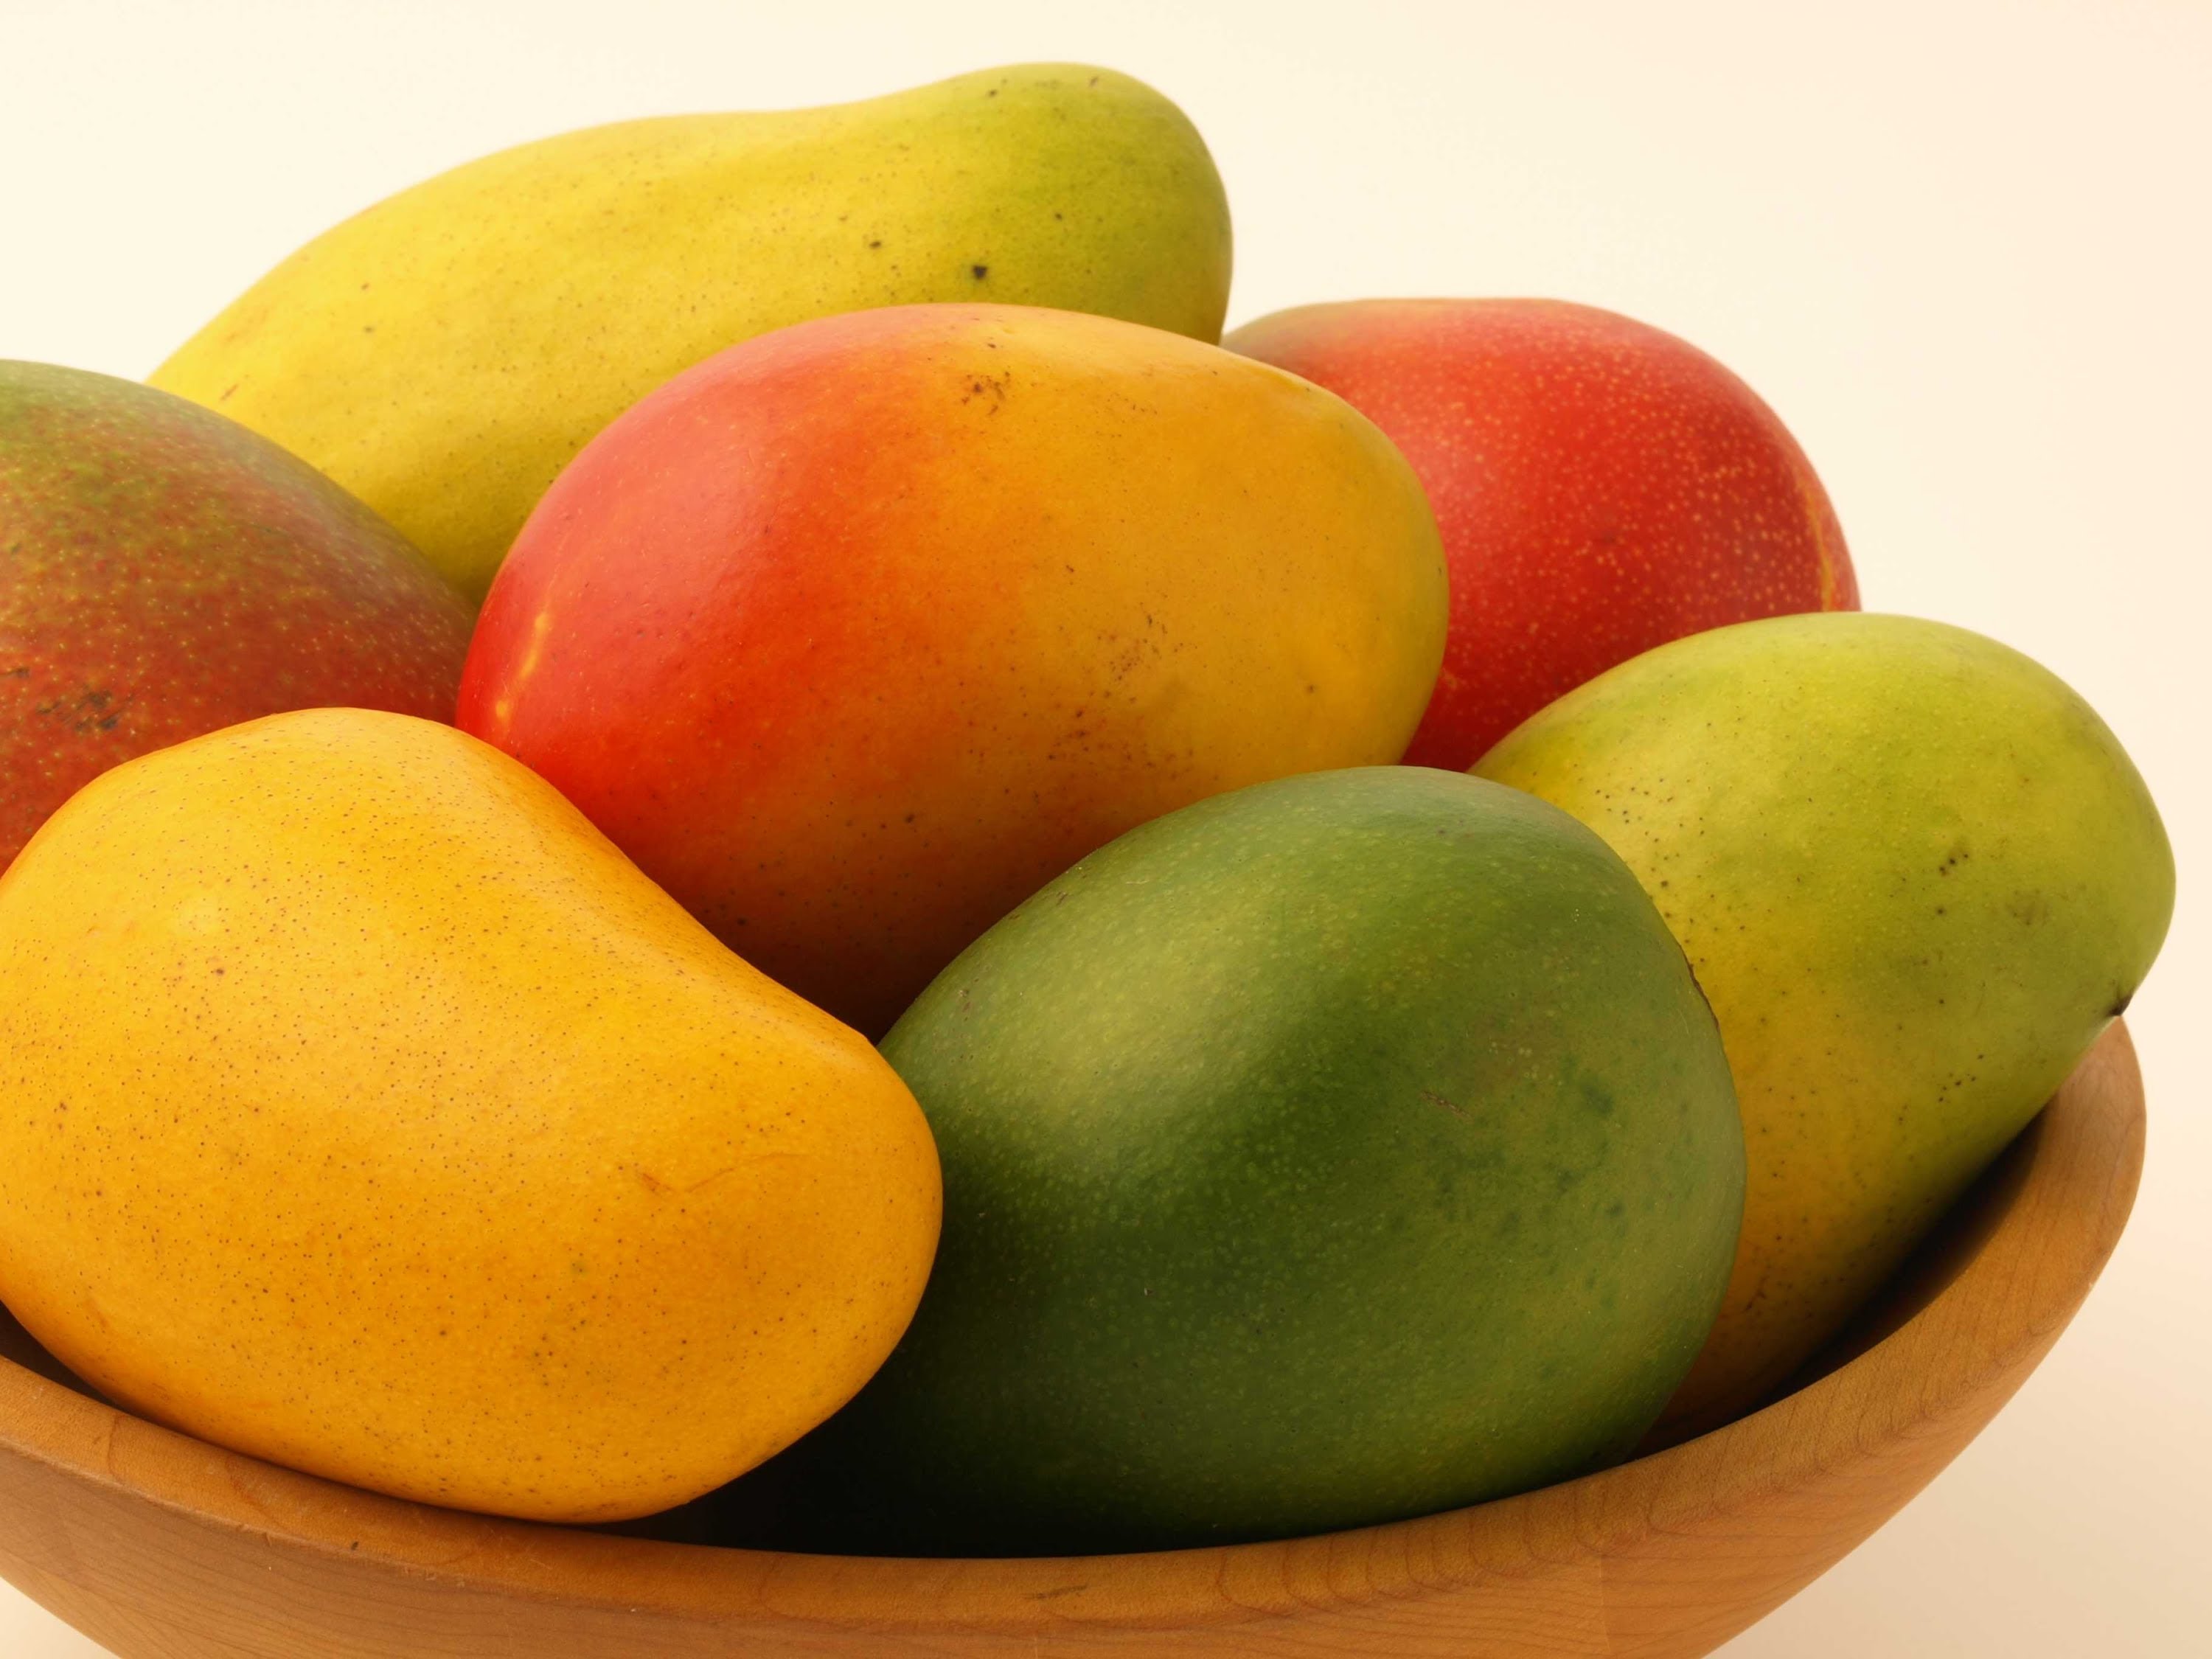 How To Make a Bird out of a Mango - How To Cut a Mango | Fruit Art ...